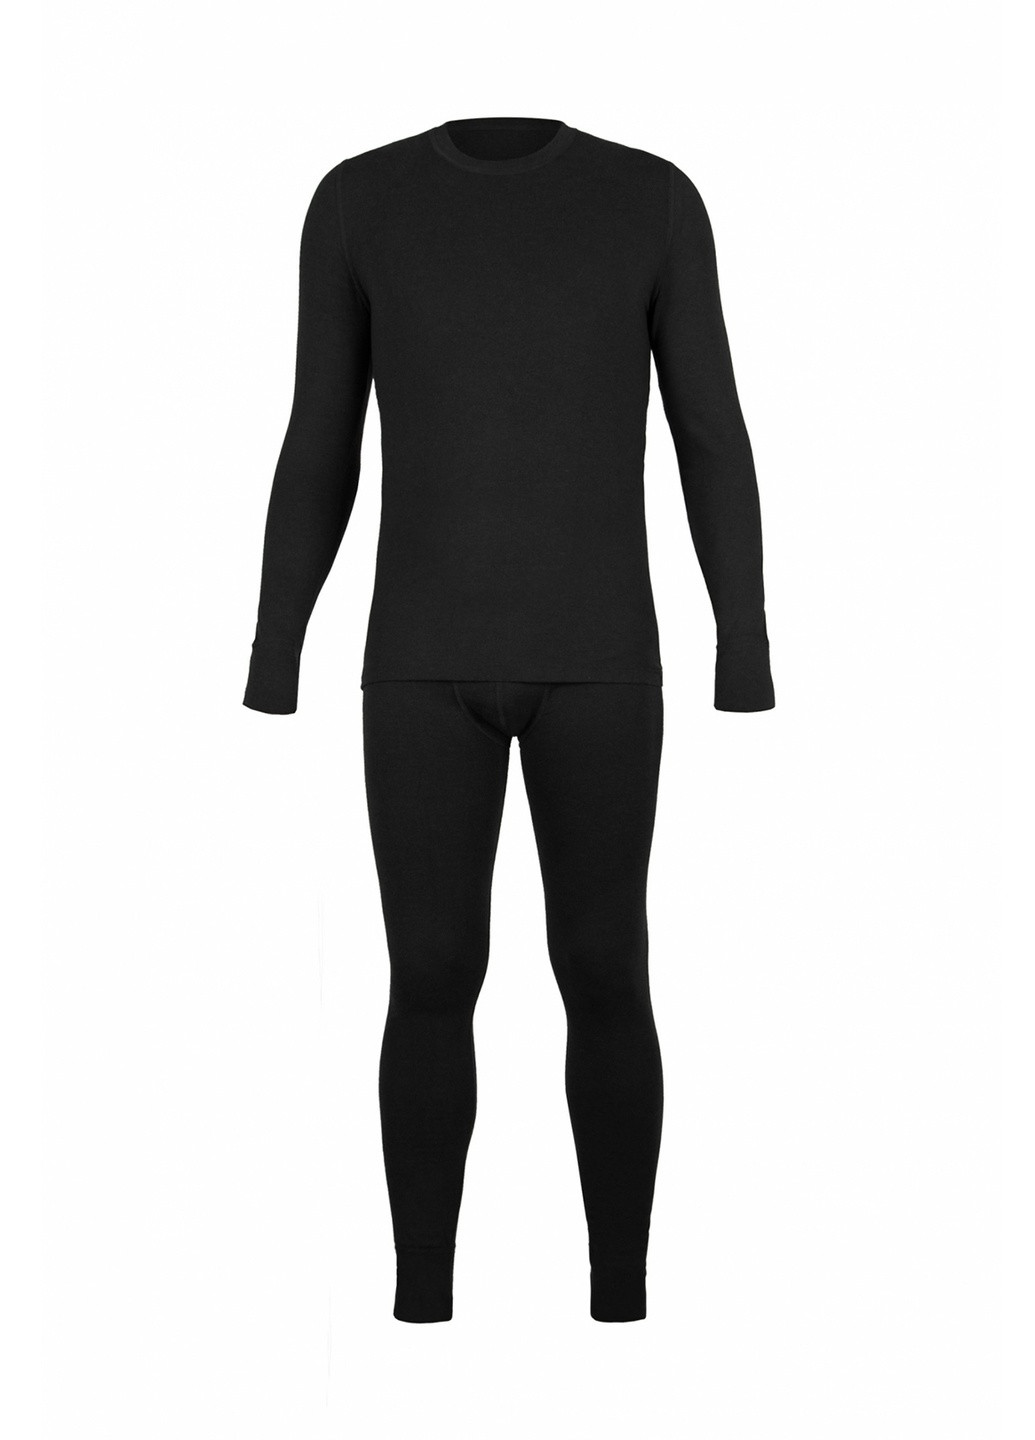 Комплект мужского термобелья из шерсти черного цвета Kifa однотонный тёмно-синий спортивный шерсть, вискоза